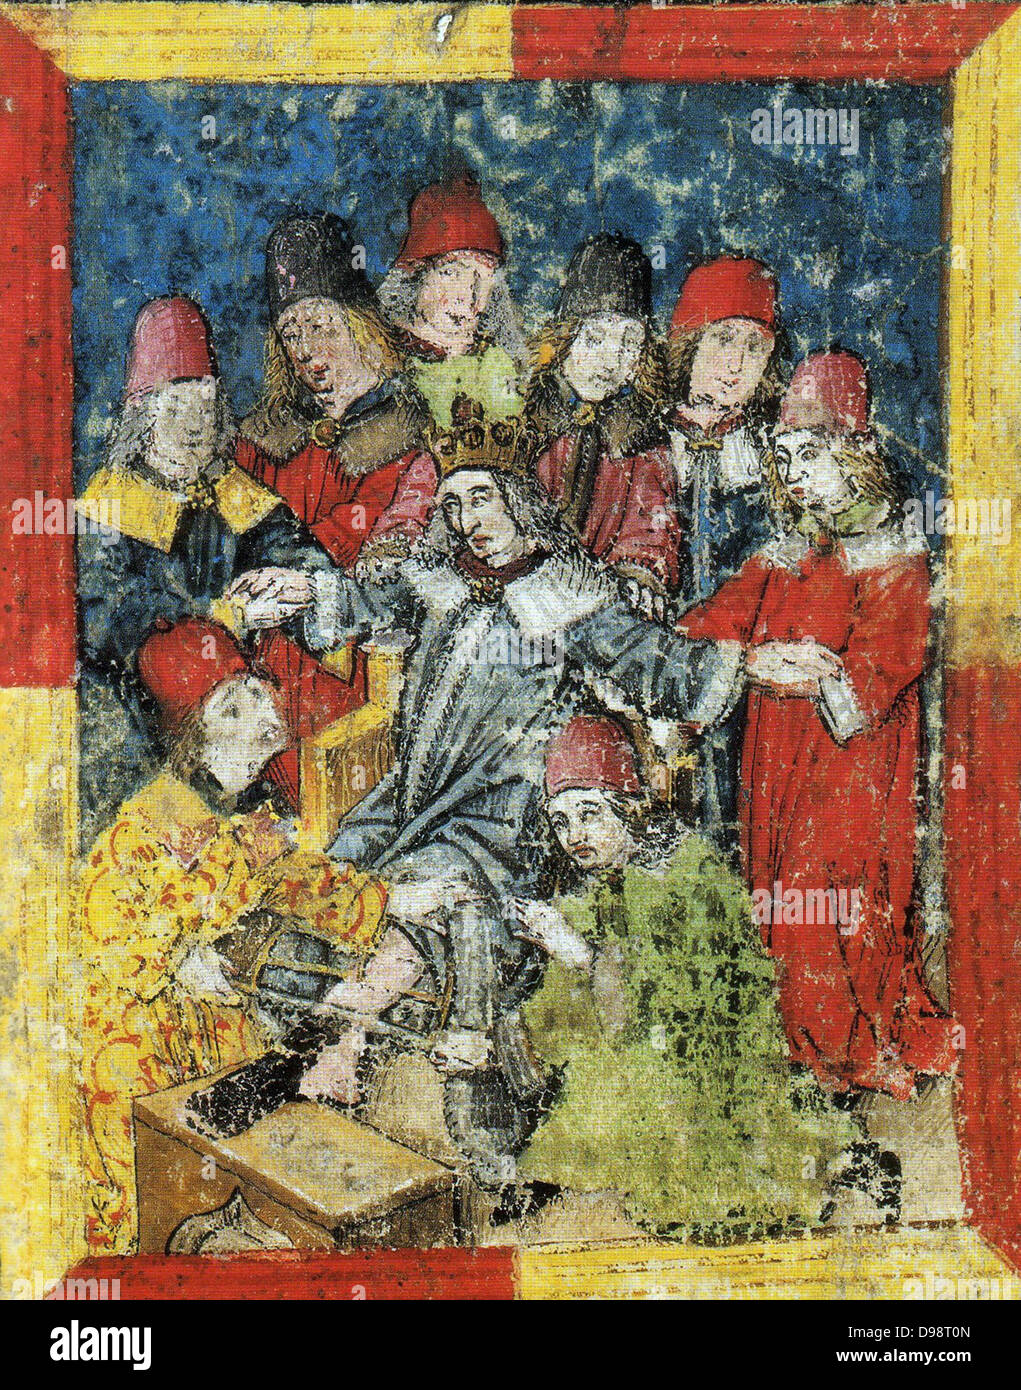 Friedrich III. von Habsburg (September 21, 1415 - August 19, 1493) wurde als deutscher König als Nachfolger von Albert II. im Jahre 1440 gewählt. Im Alter von 77 Jahren, Friedrich III. starb in Linz in einem gescheiterten Versuch, sein linkes Bein amputiert haben. Sein amputiertes Bein war mit ihm begraben. Stockfoto